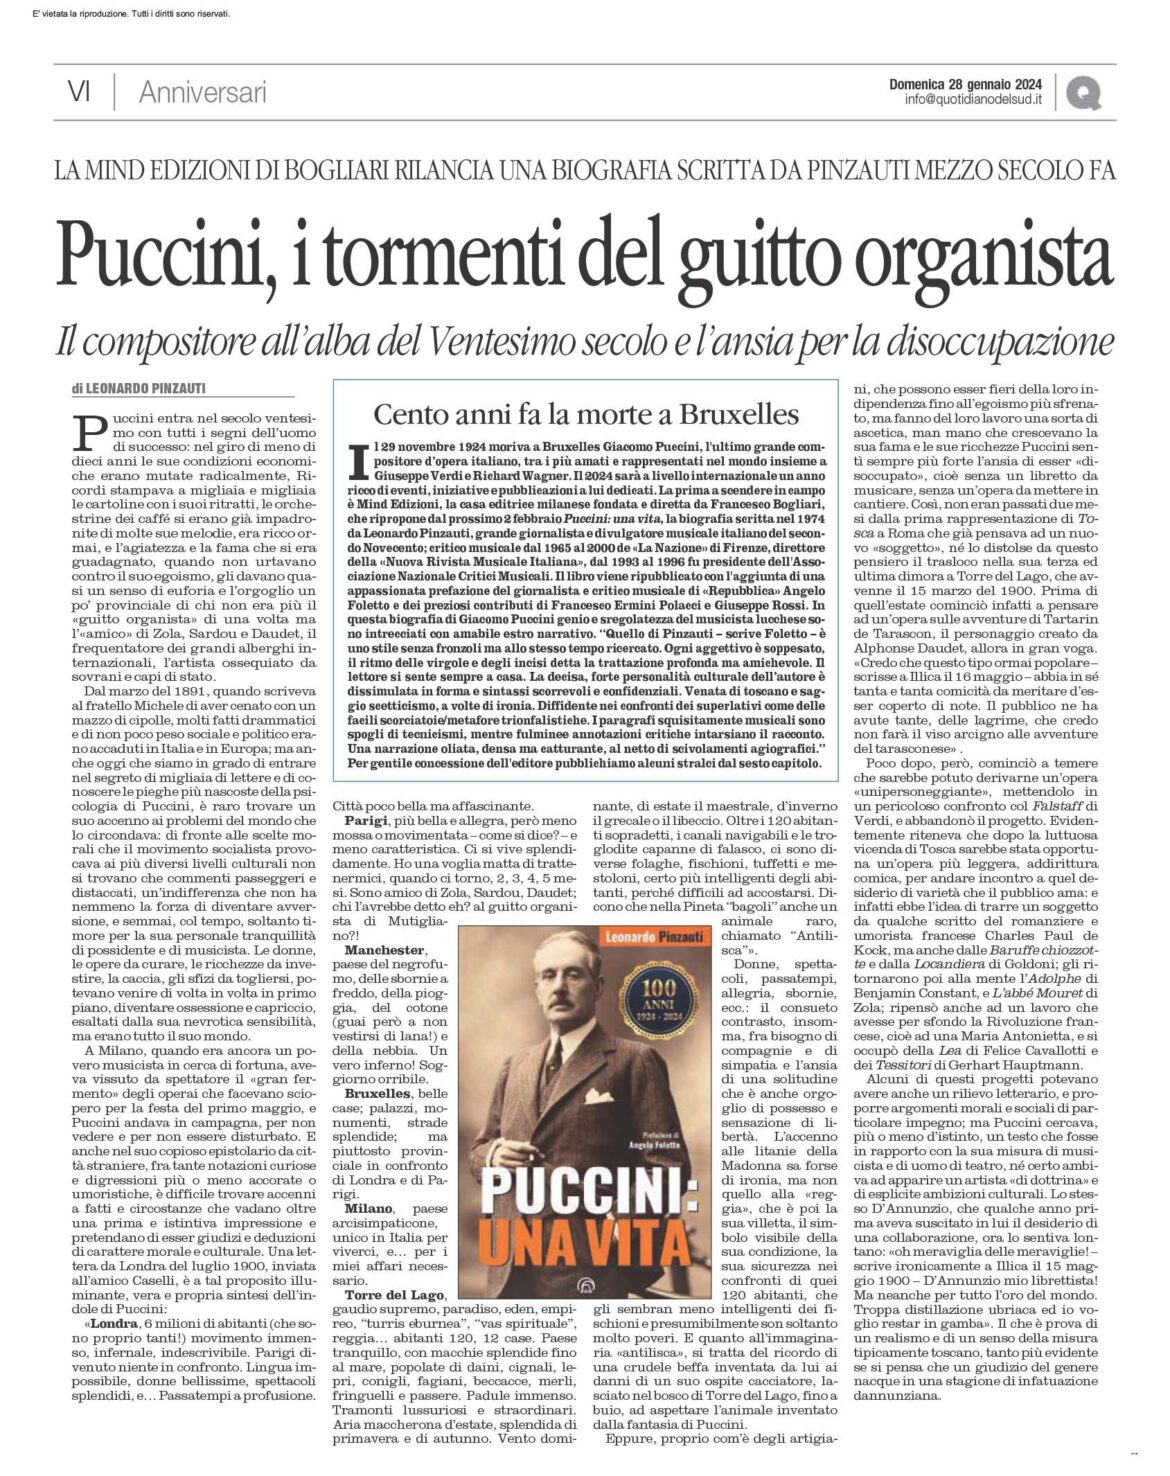 Pinzauti Puccini Recensione Quotidiano del Sud 28.1.24